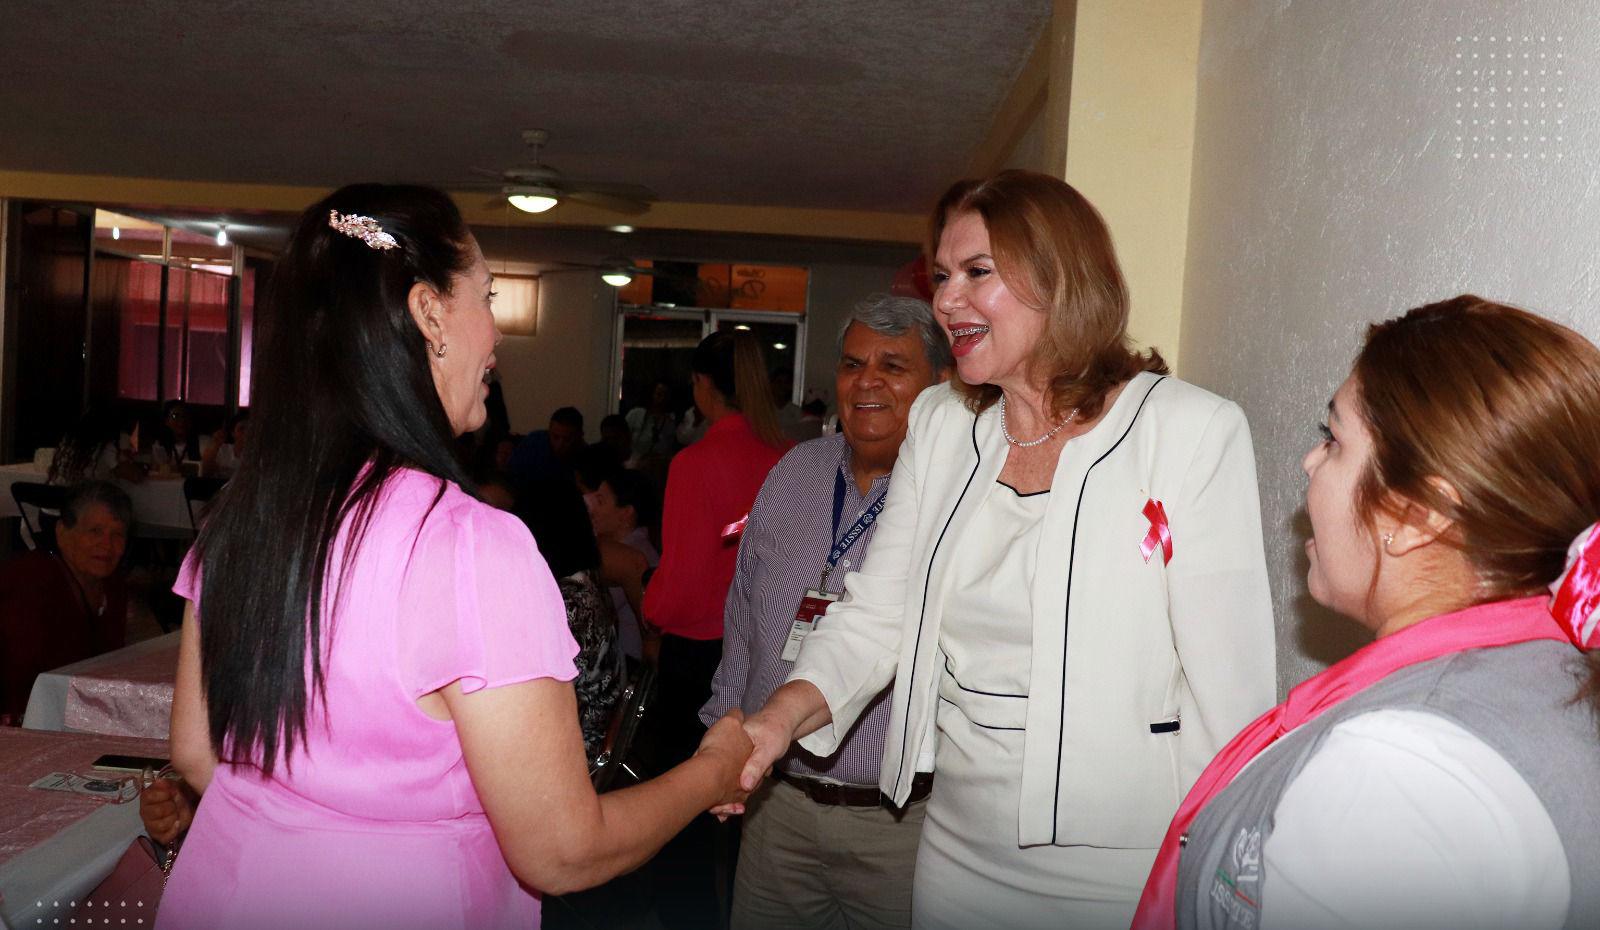 $!Colaboran en Escuinapa para concientizar sobre el cáncer de mama